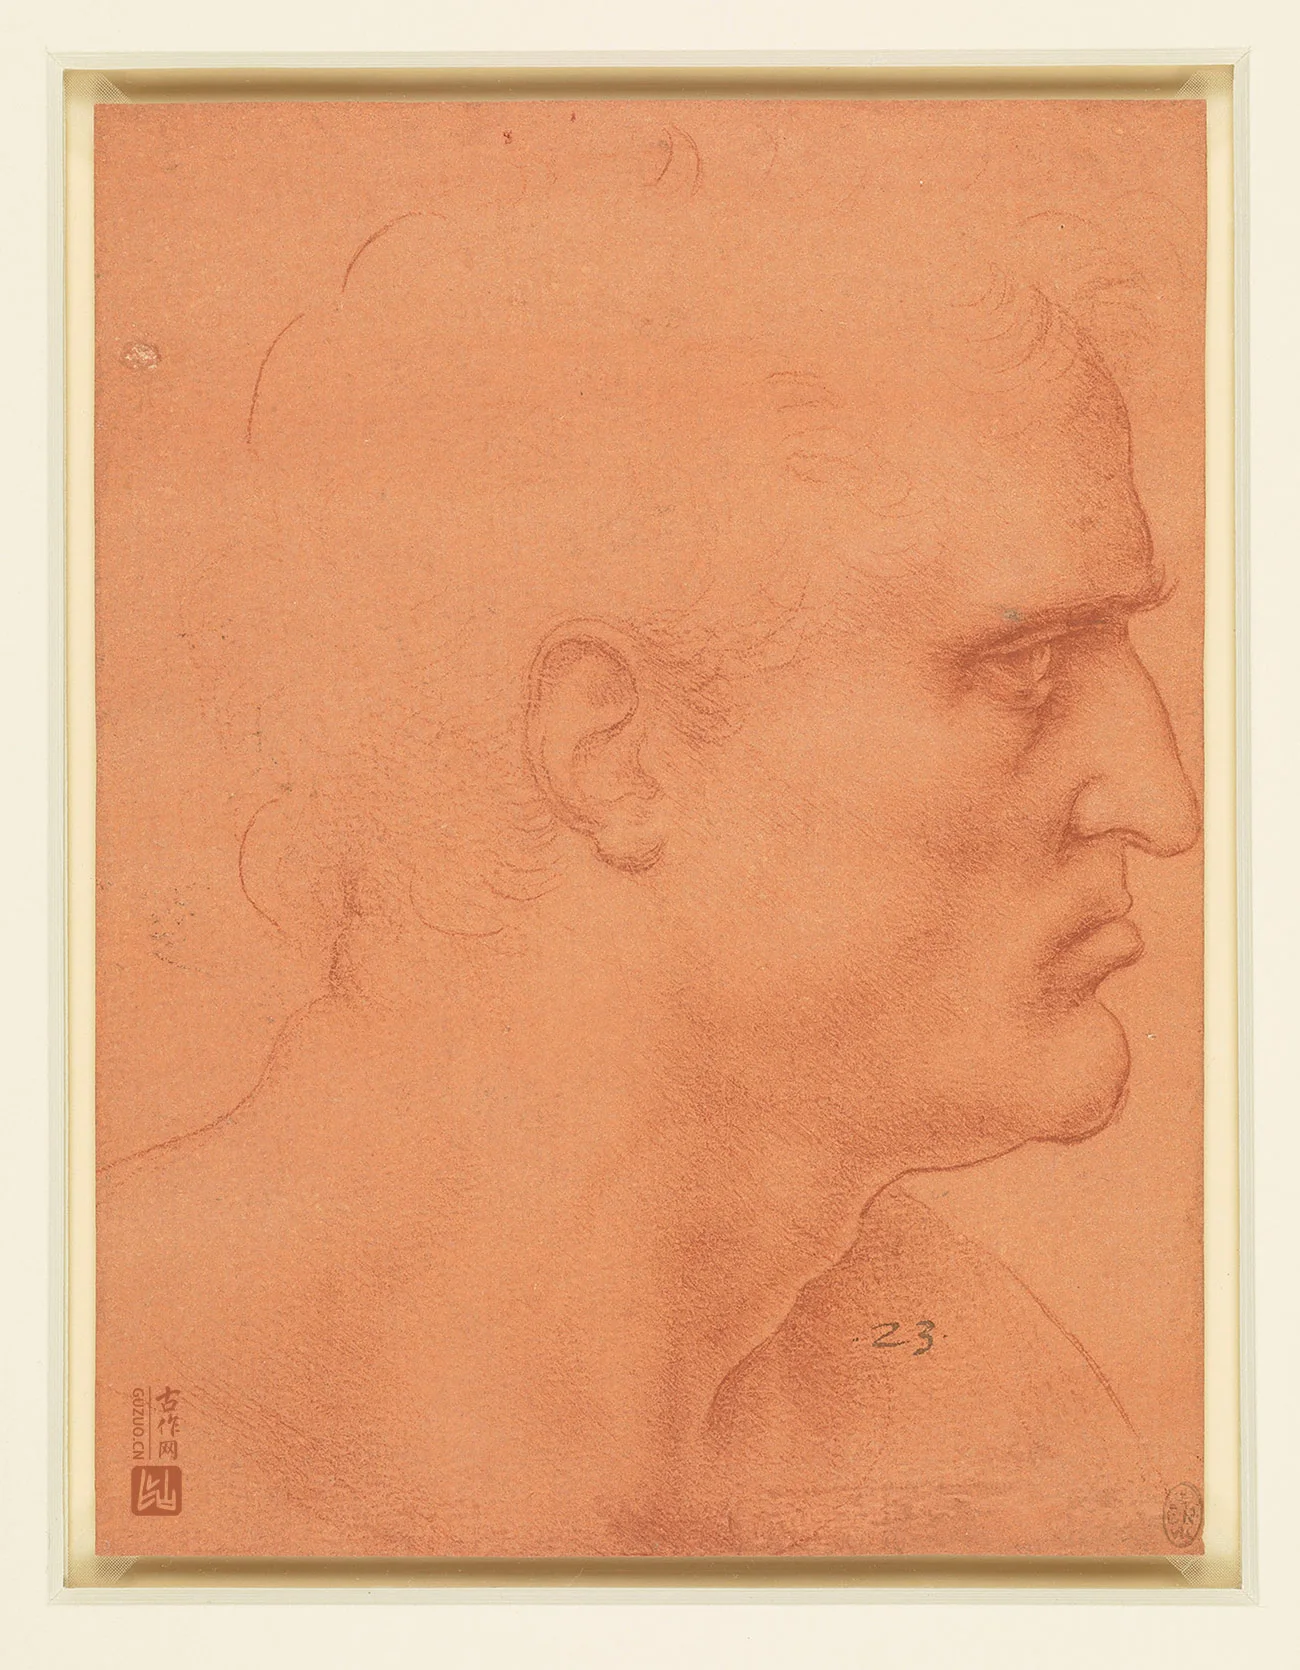 达芬奇素描《圣巴塞洛缪的头像》